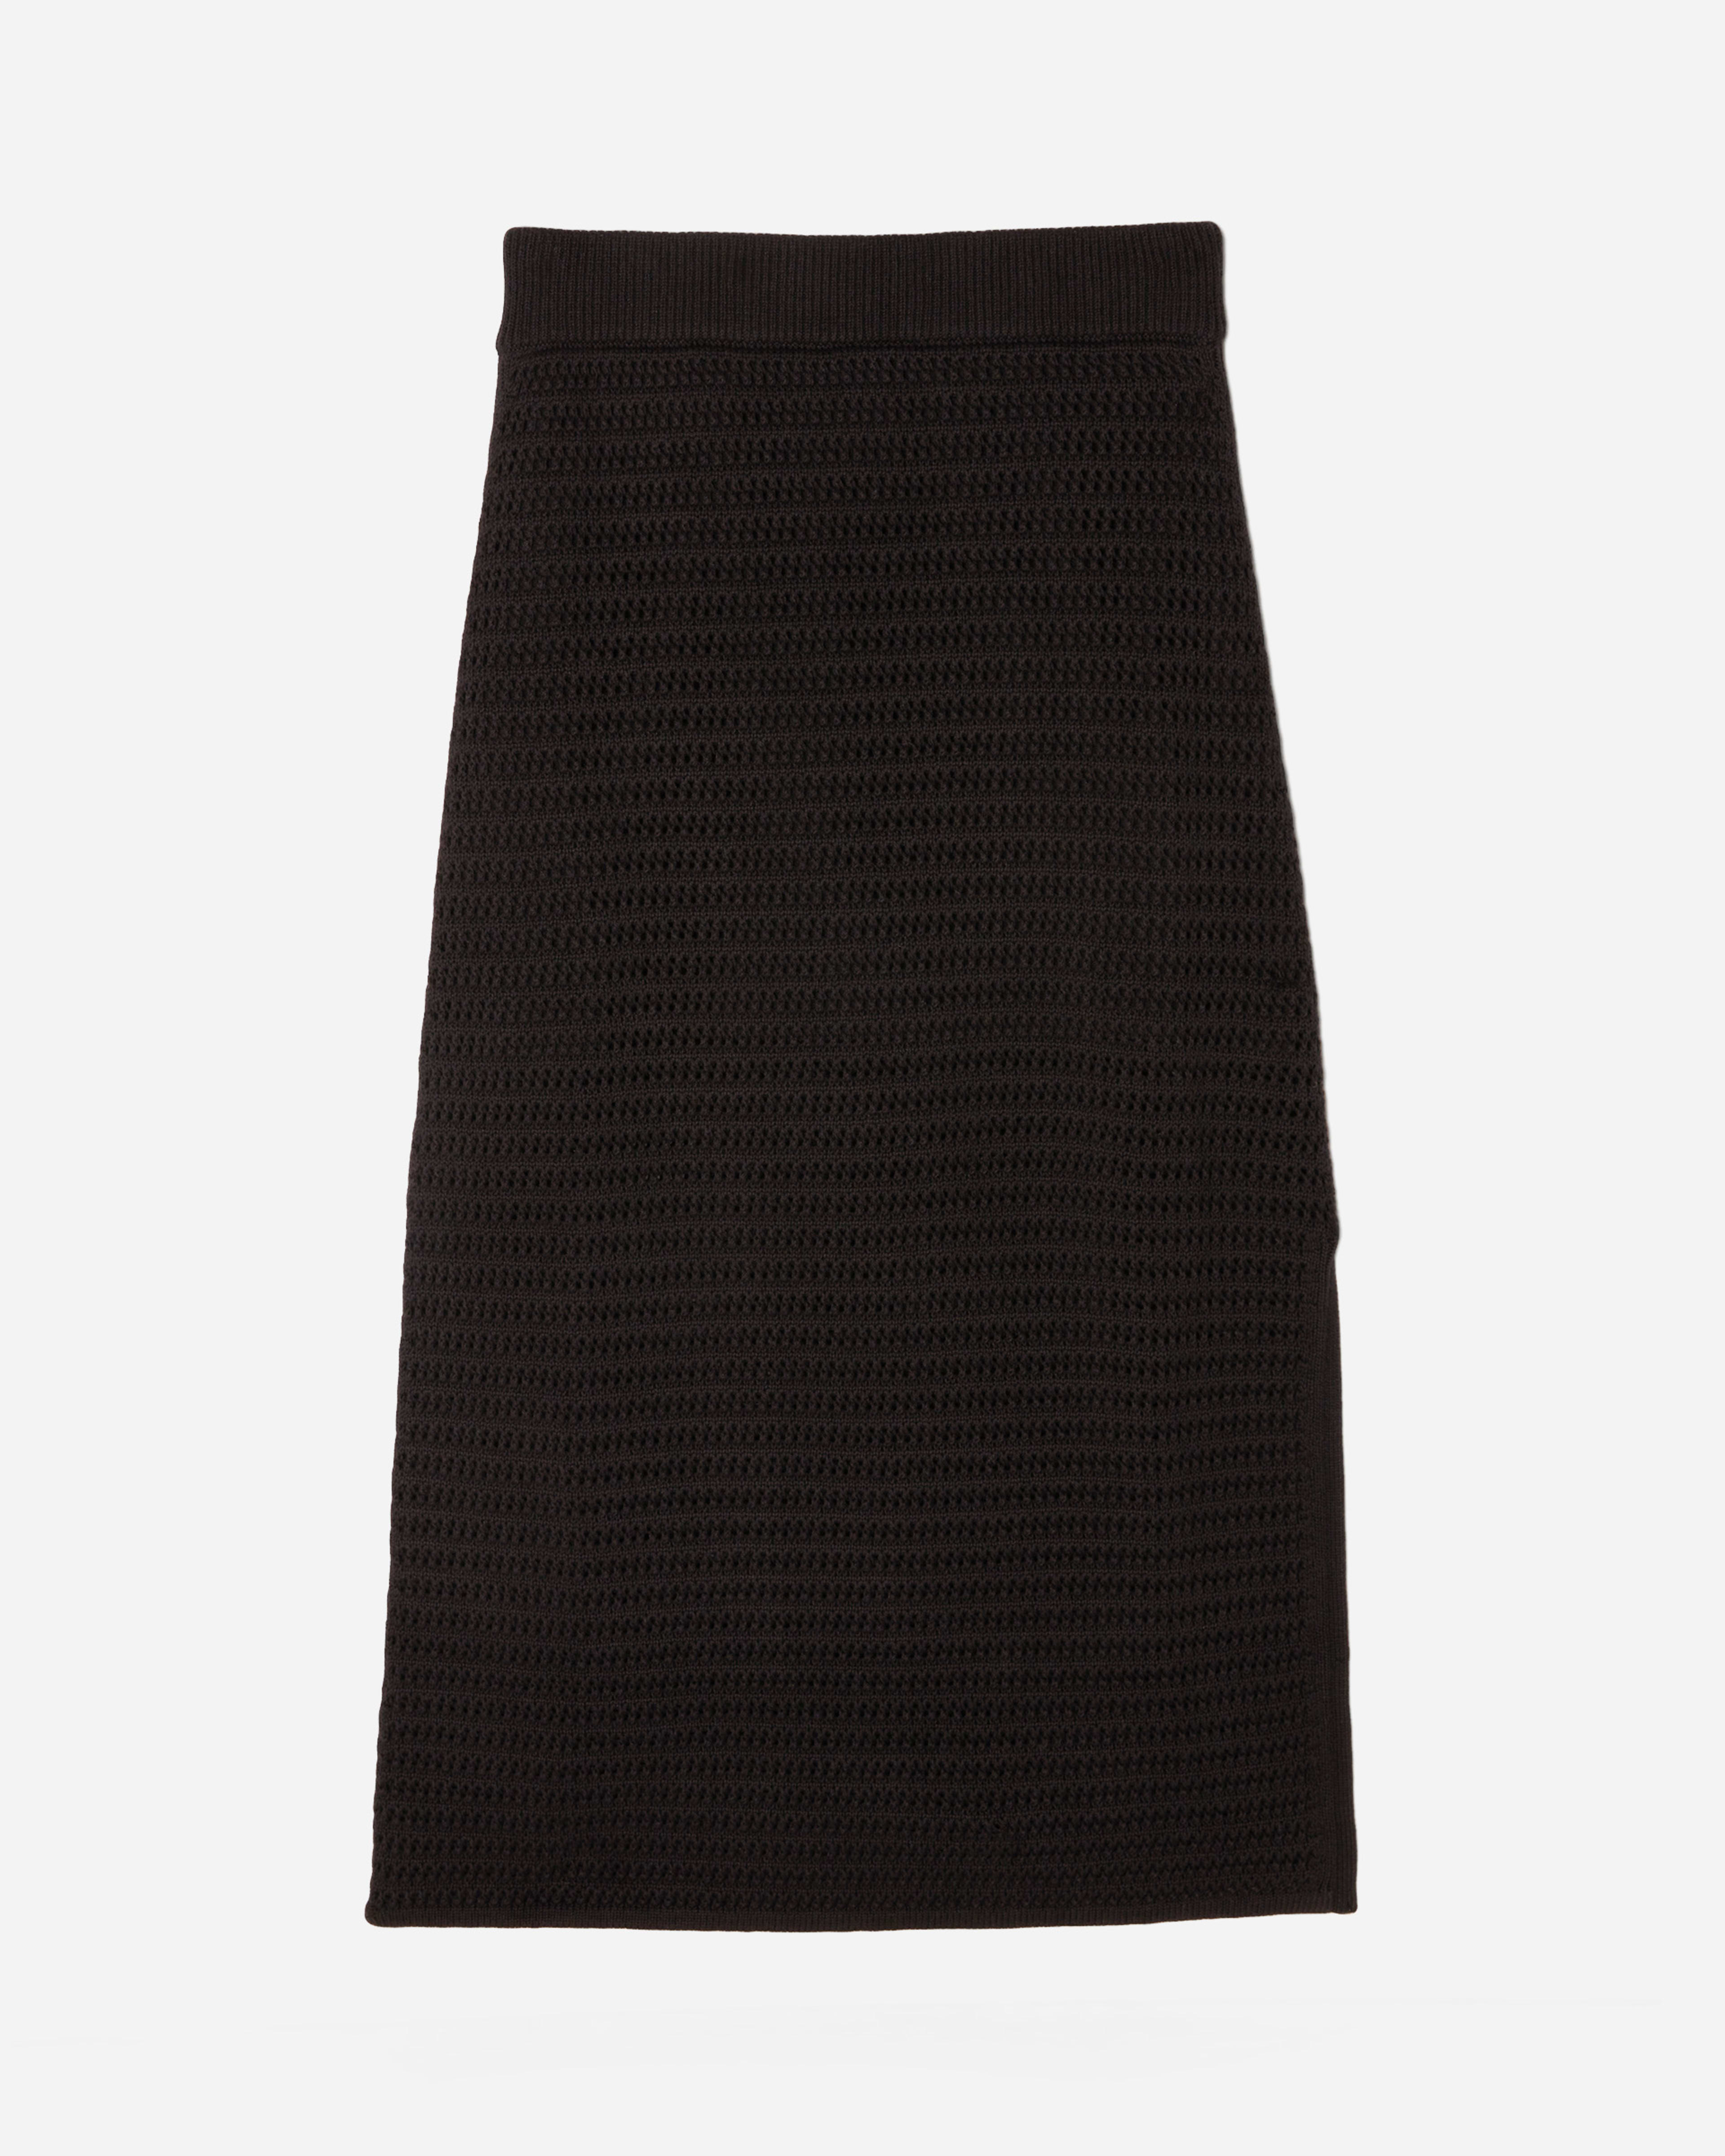 The Crochet Knit Skirt Black – Everlane